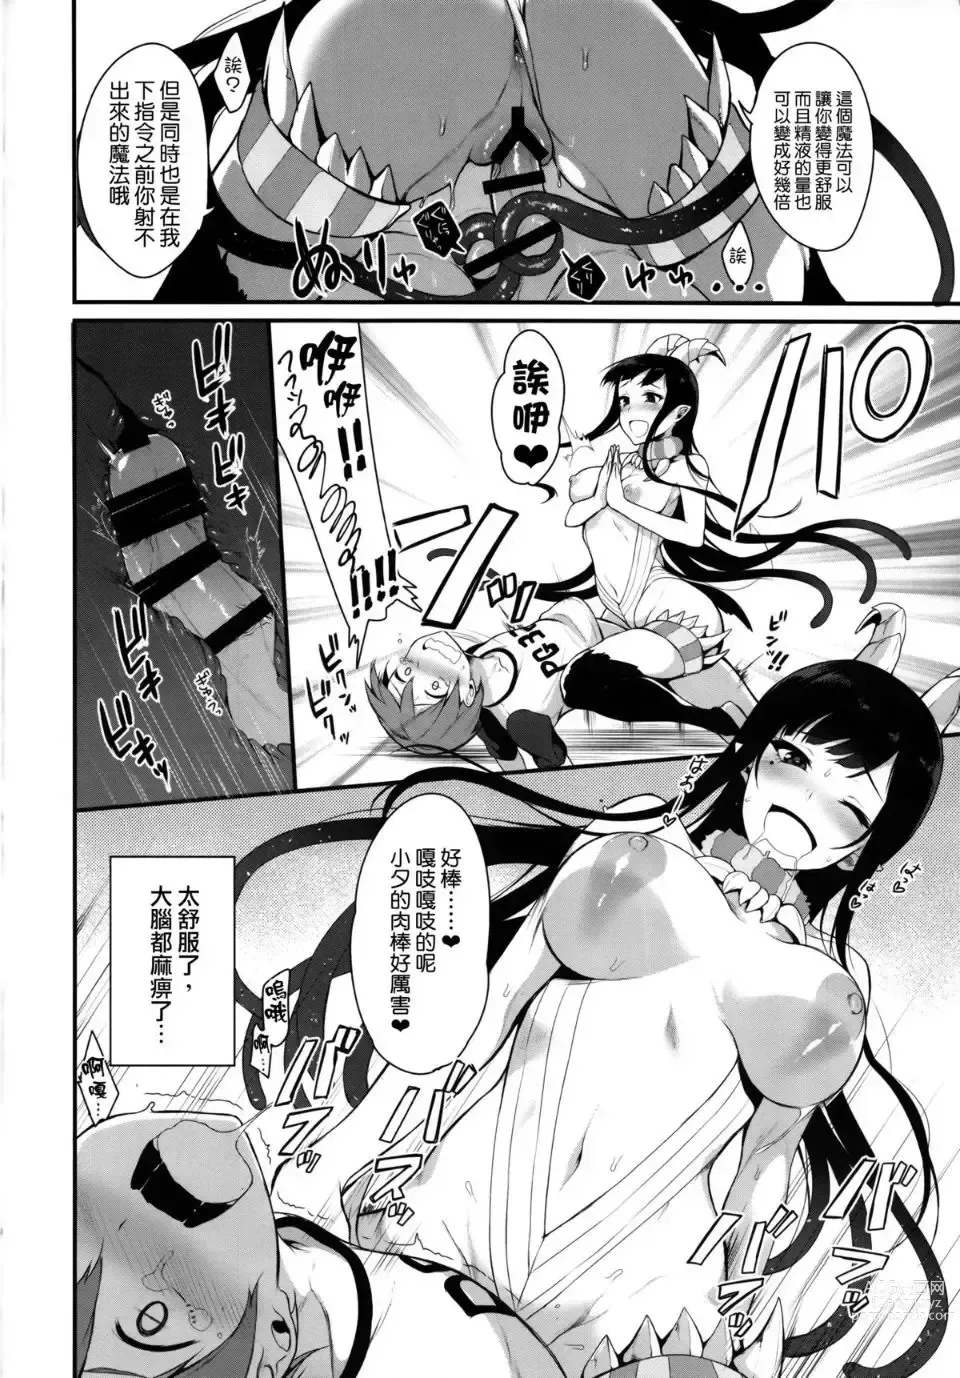 Page 21 of doujinshi Ane Naru Mono 1-11